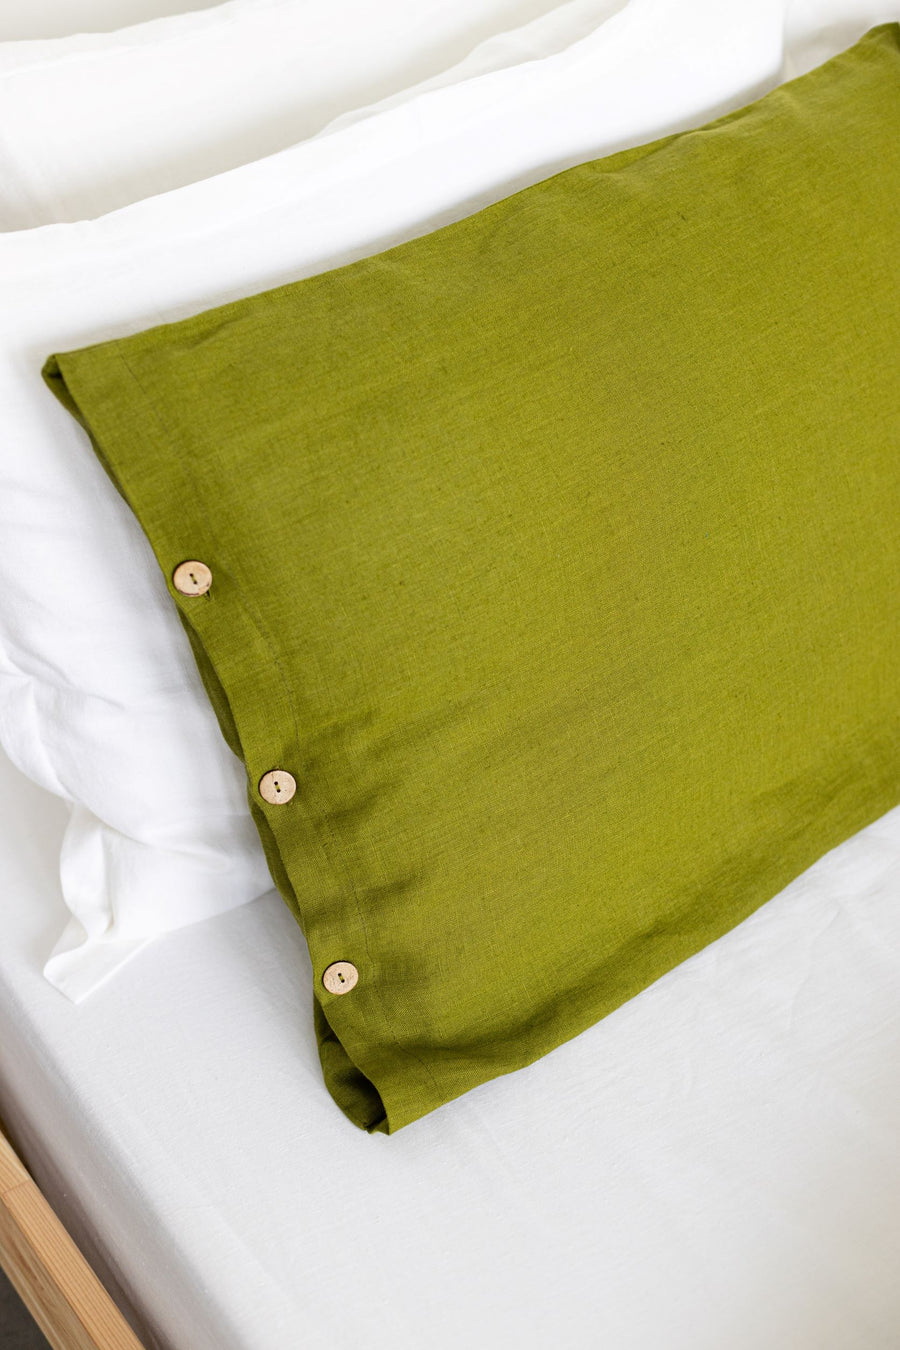 Moss Green Linen Duvet Cover And 2 Pillow Cases